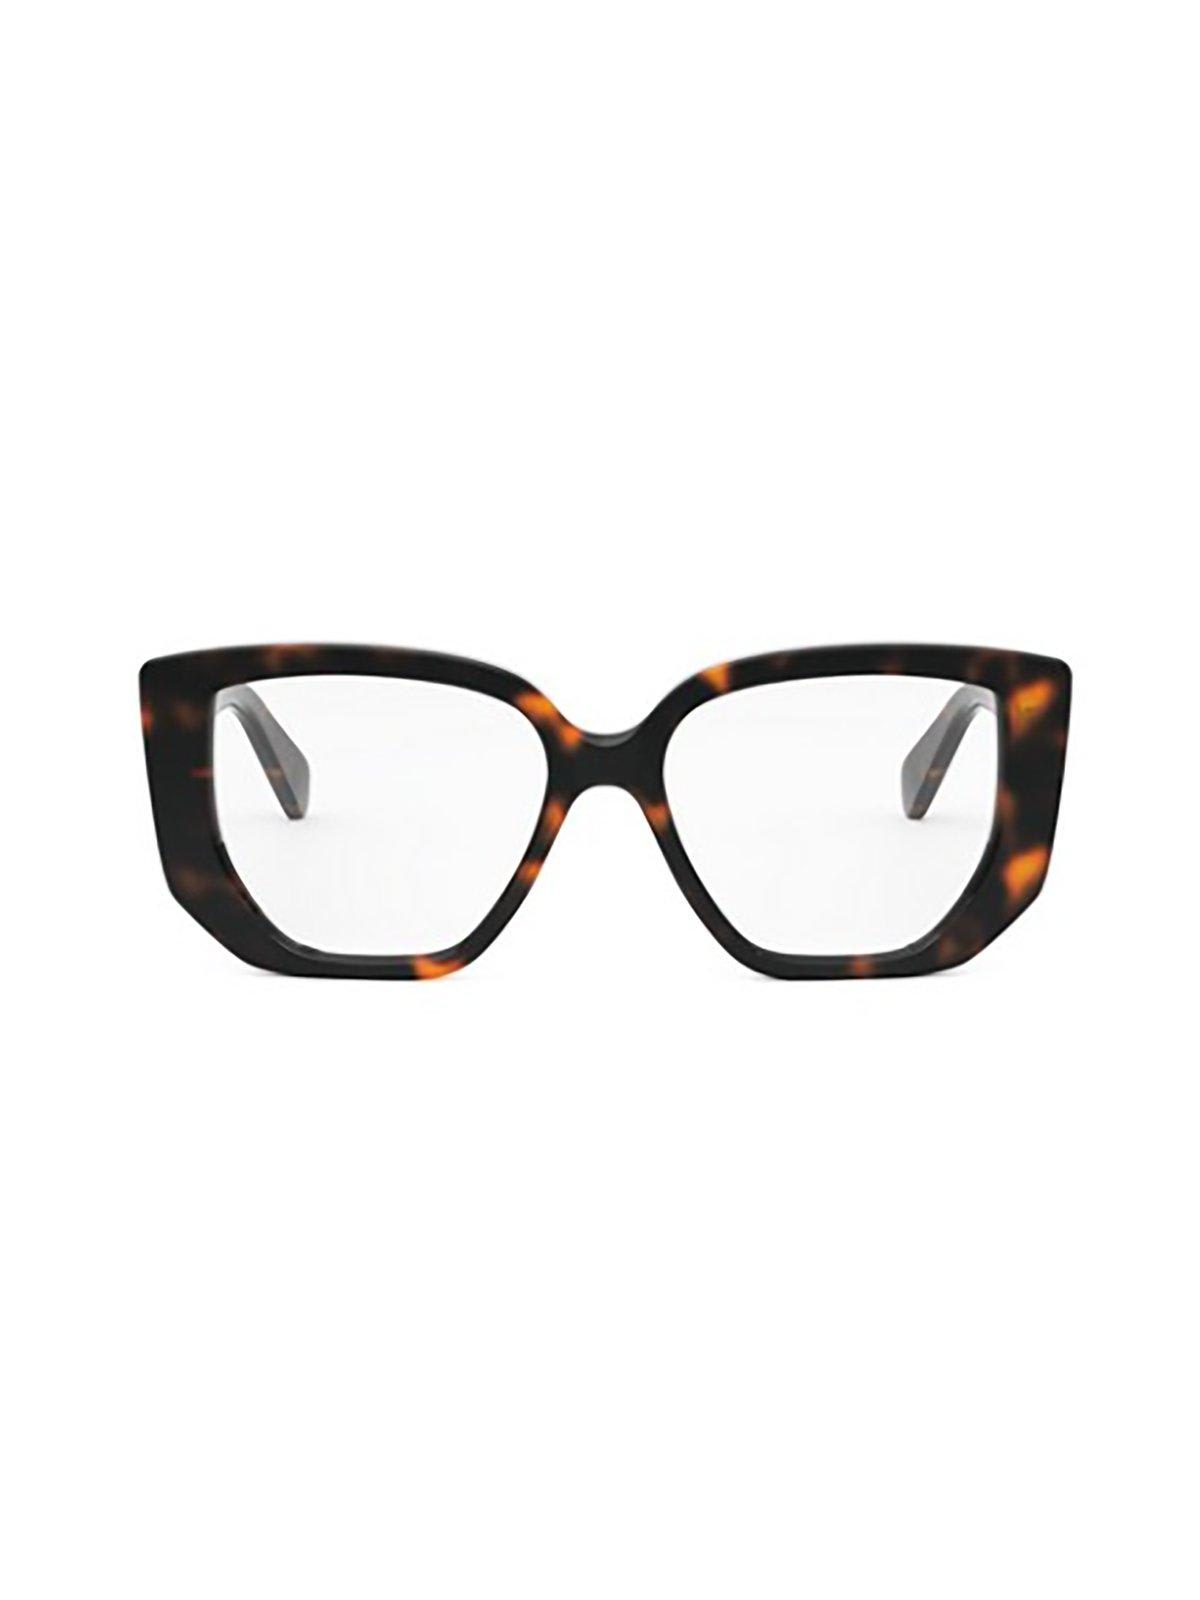 Celine Square Frame Glasses In 052